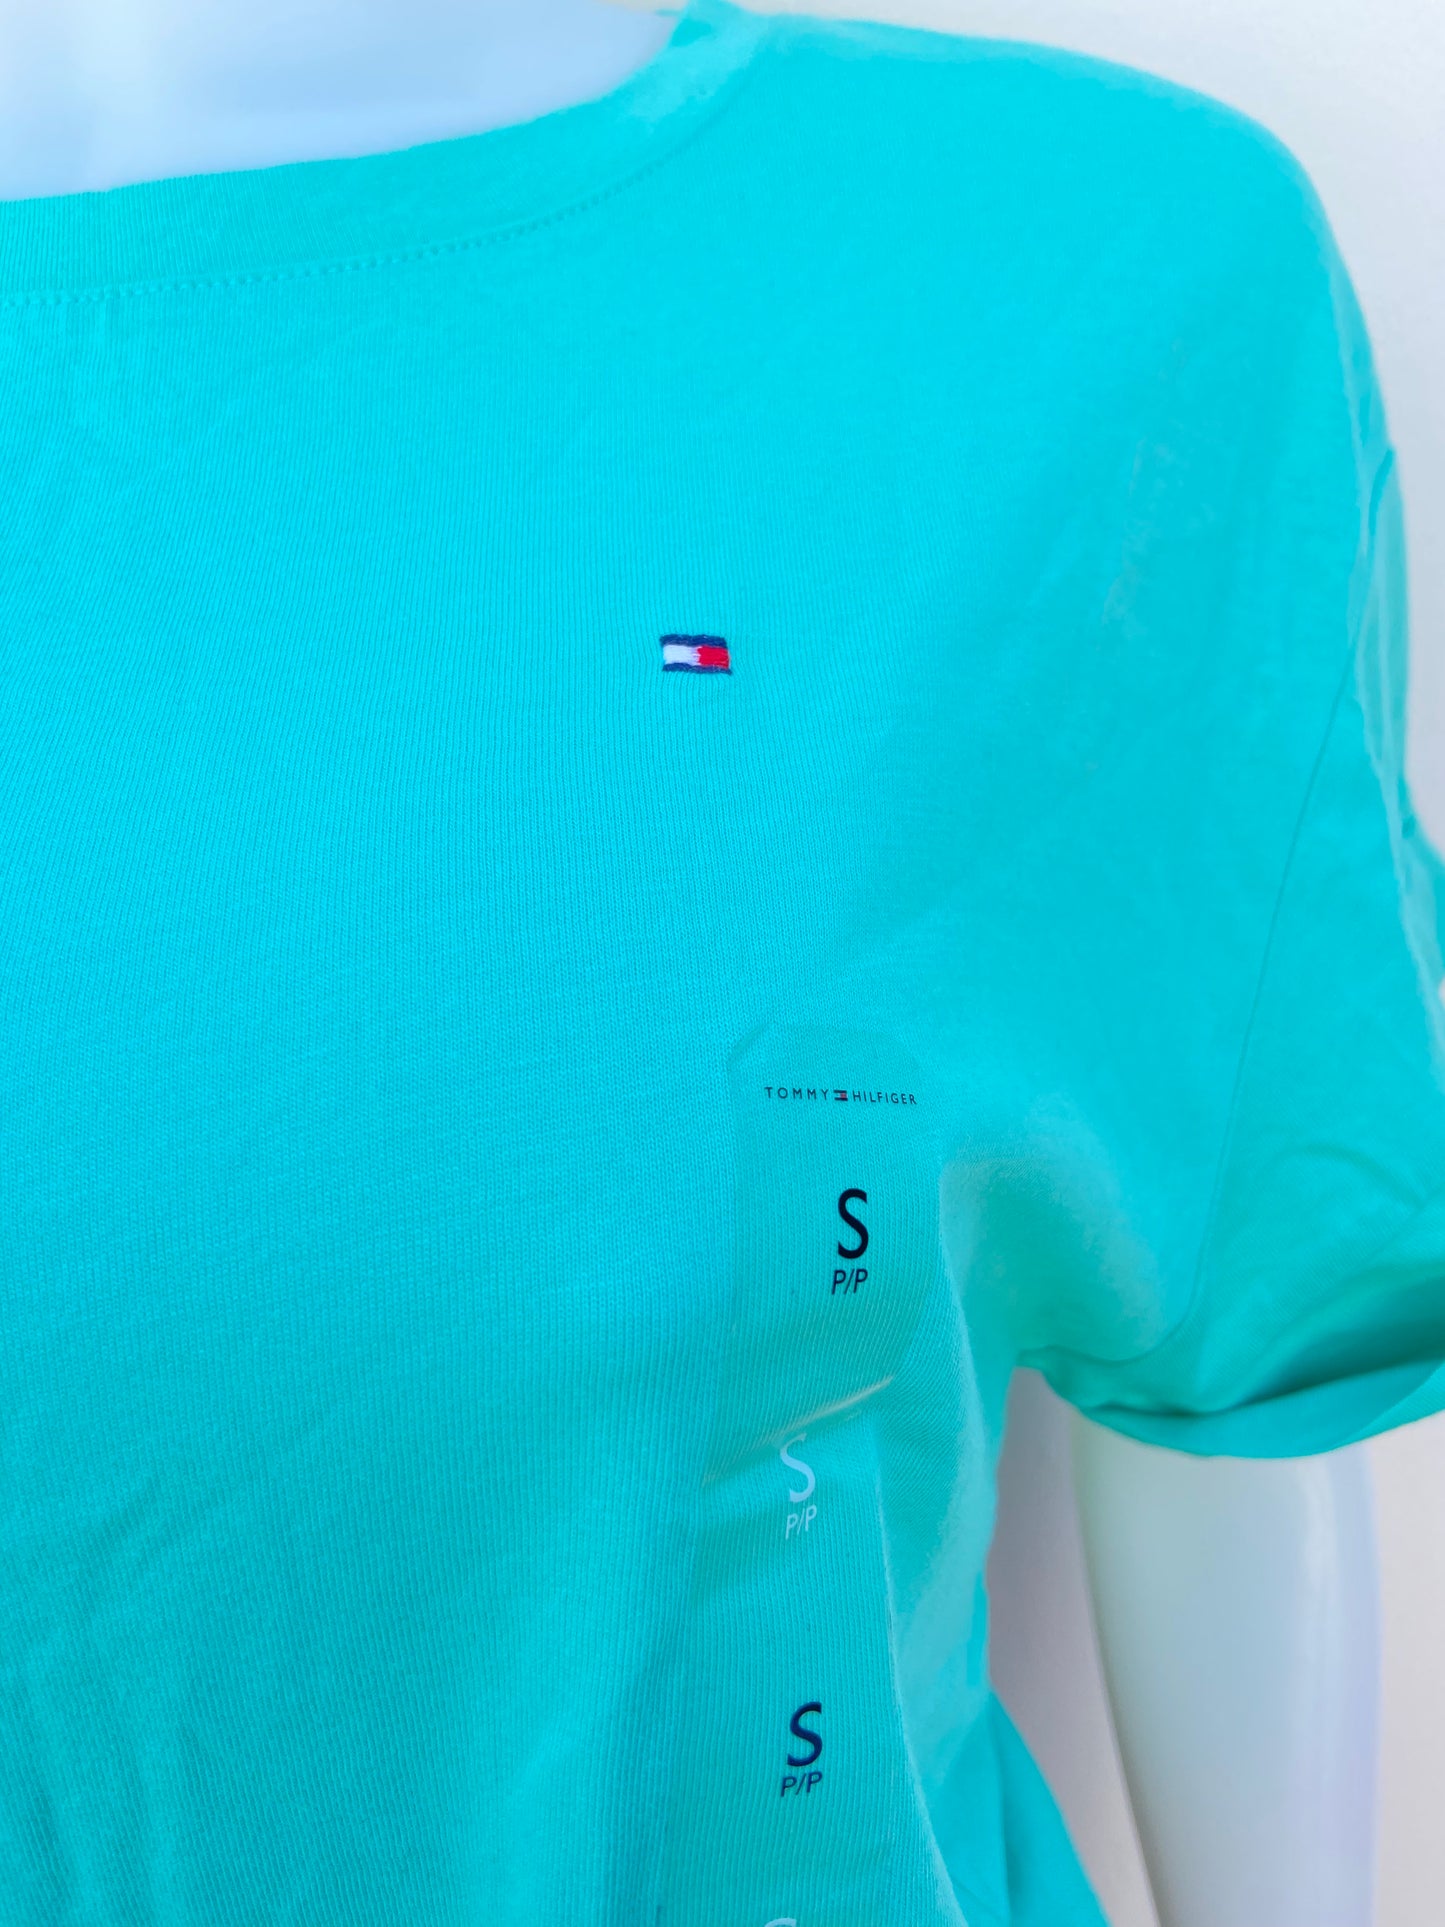 Blusa Tommy Hilfiger original verde aqua, con logotipo de la marca al lado y lazo ajustable en la parte delantera.